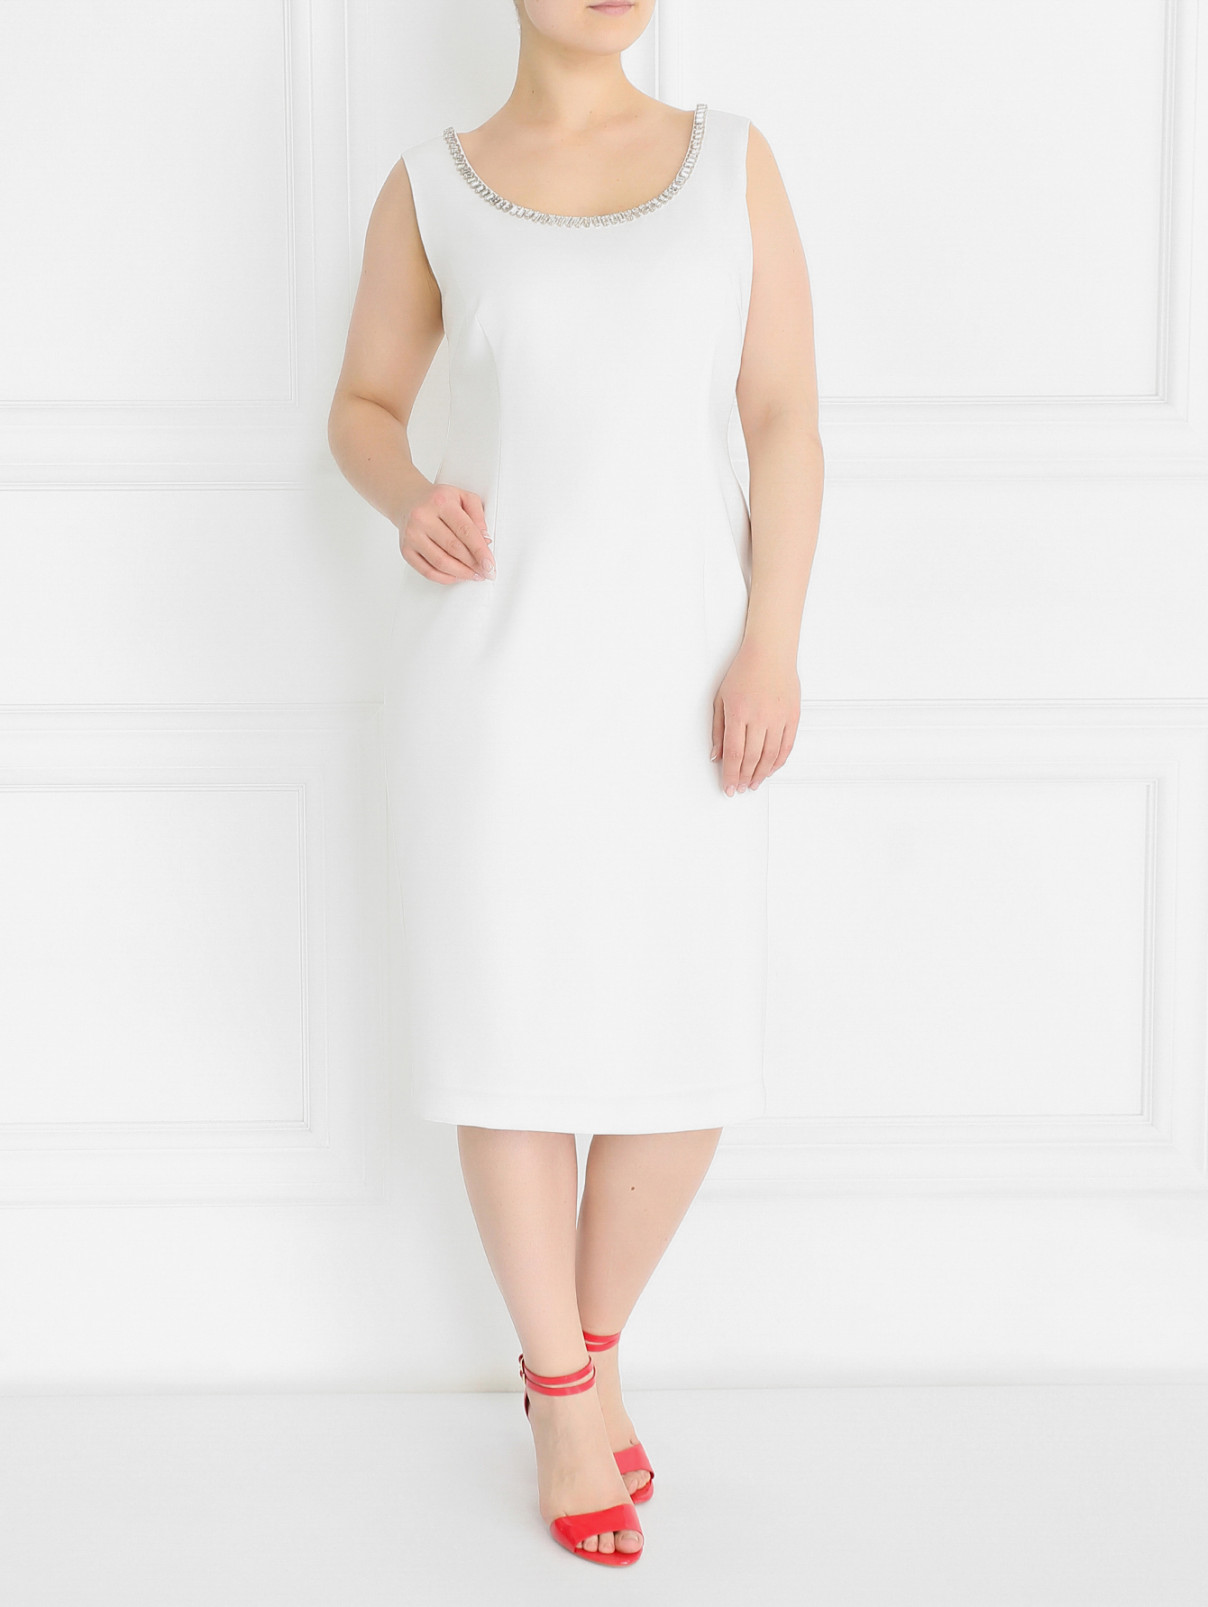 Платье-футляр с декоративной отделкой из кристаллов Marina Rinaldi  –  Модель Общий вид  – Цвет:  Белый